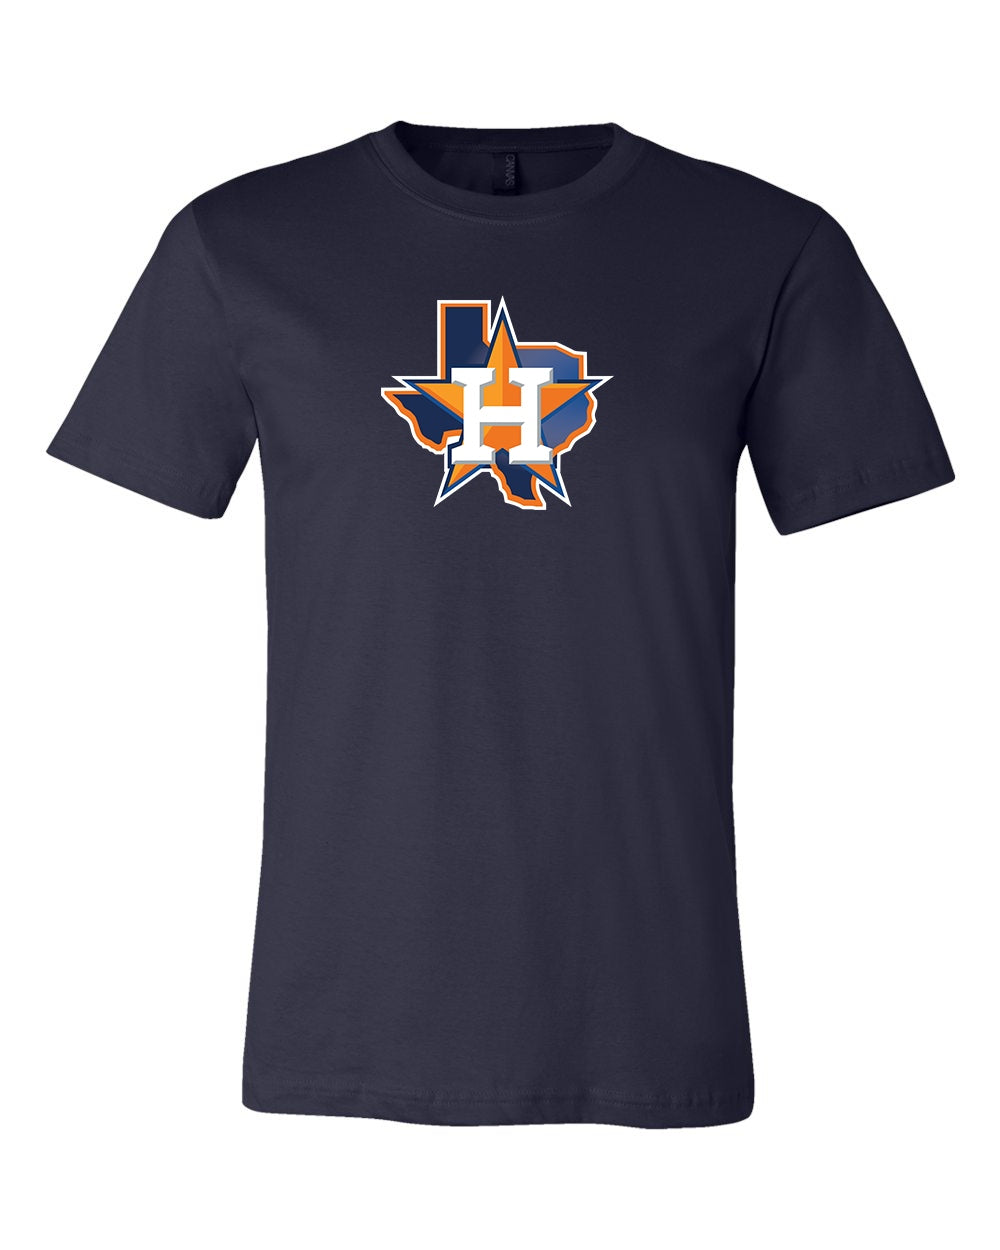 ApolloSupplyCo Los Astros T-Shirt / Houston Astros Apparel / Astros Gear / H Town / Houston Design / Houston Baseball / Houston Texas